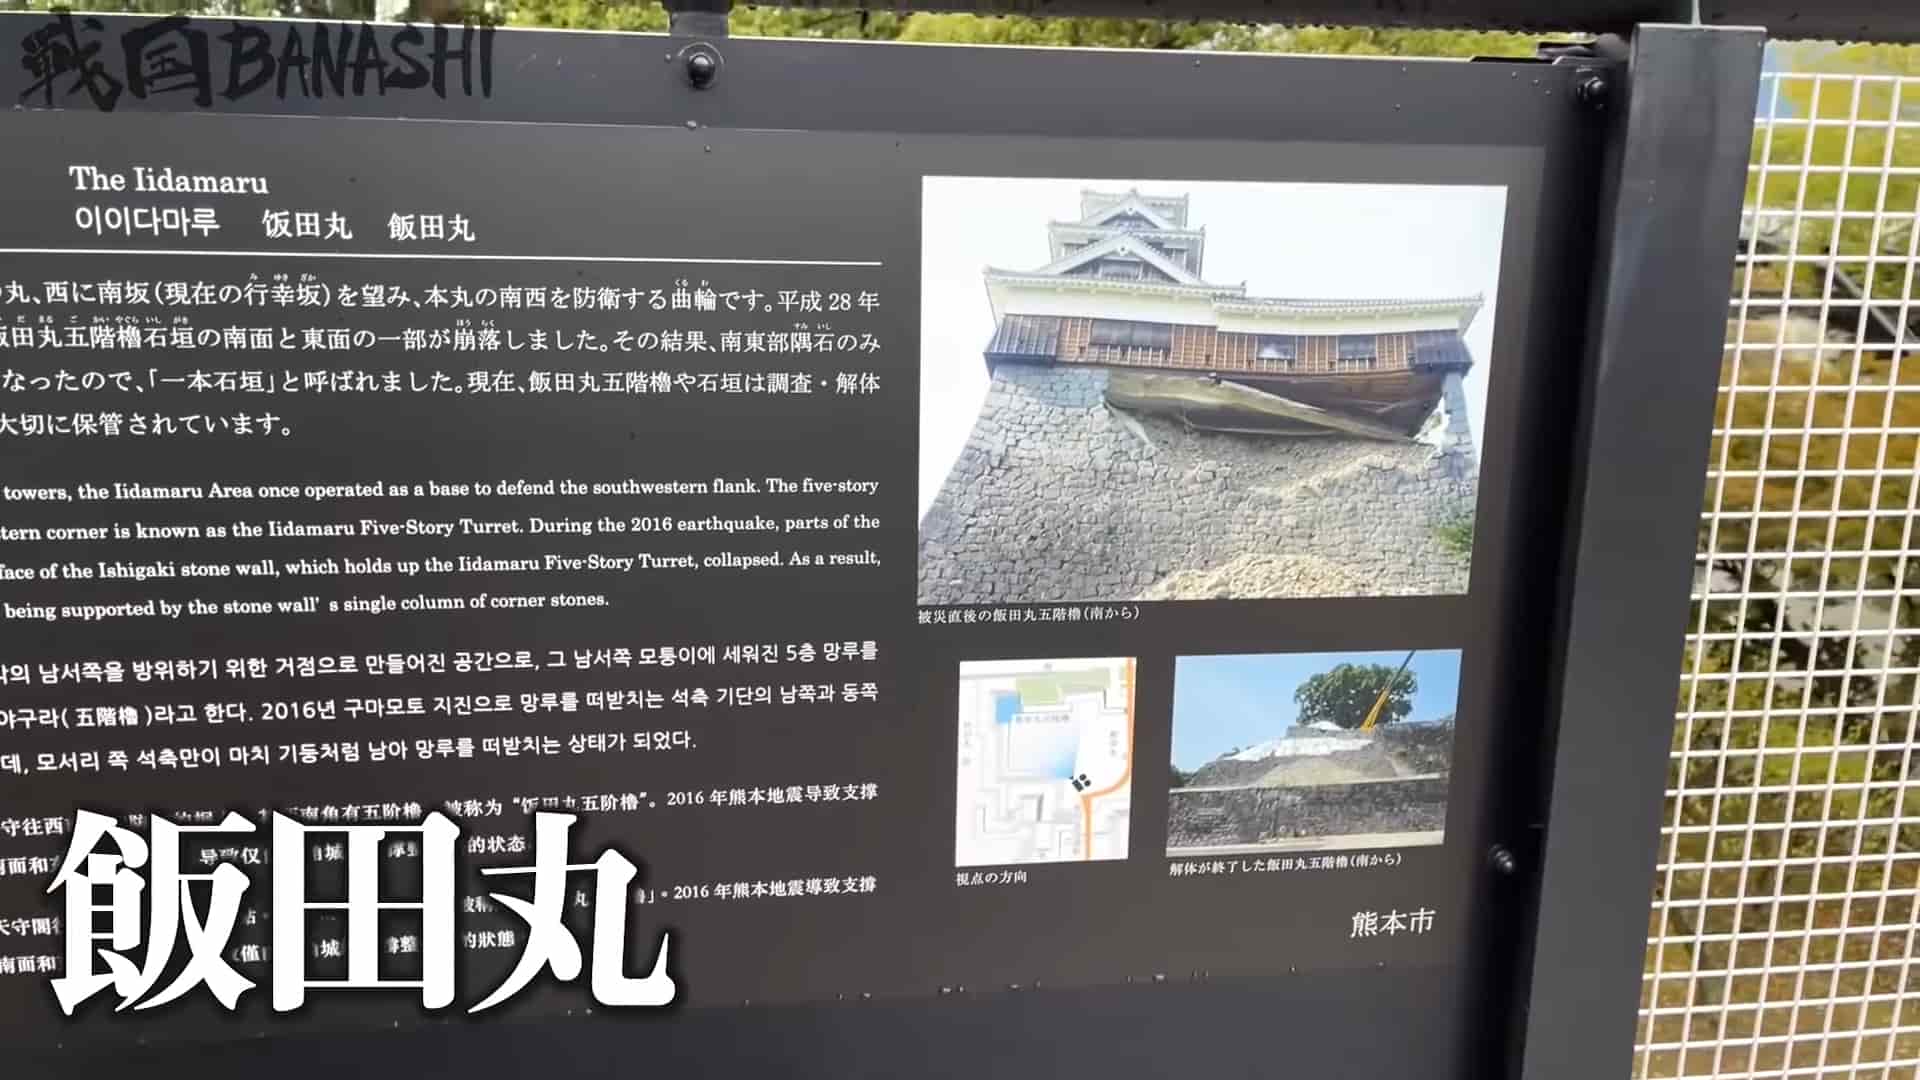 「奇跡の一本石垣」で有名な飯田丸